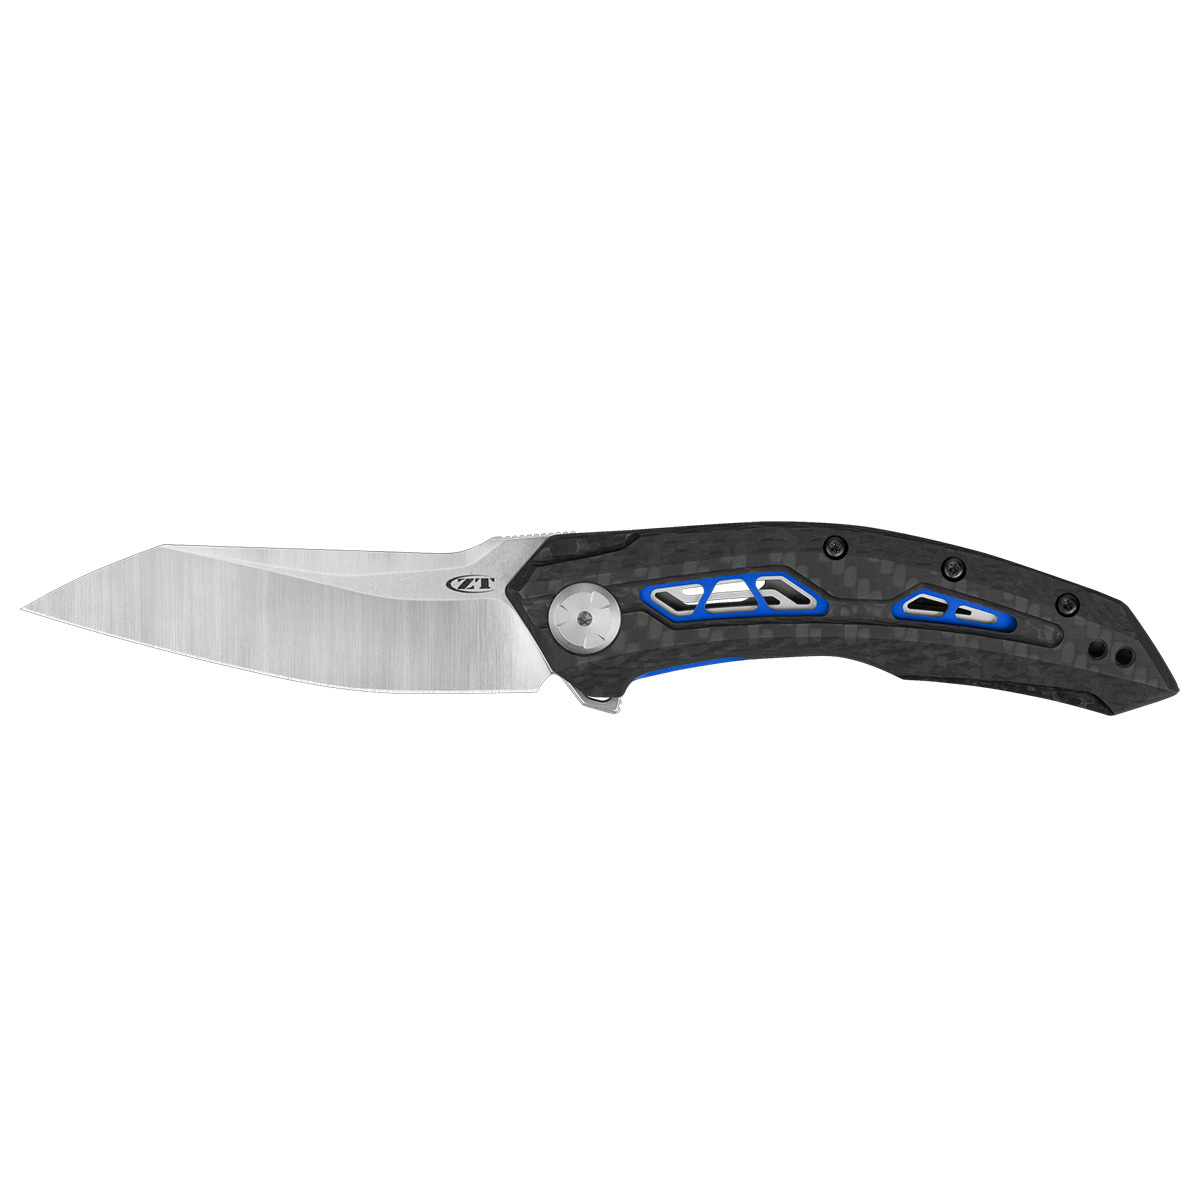 Складной нож Zero Tolerance 0762, сталь CPM-20CV, рукоять карбон складной нож we knife mini synergy cpm 20cv